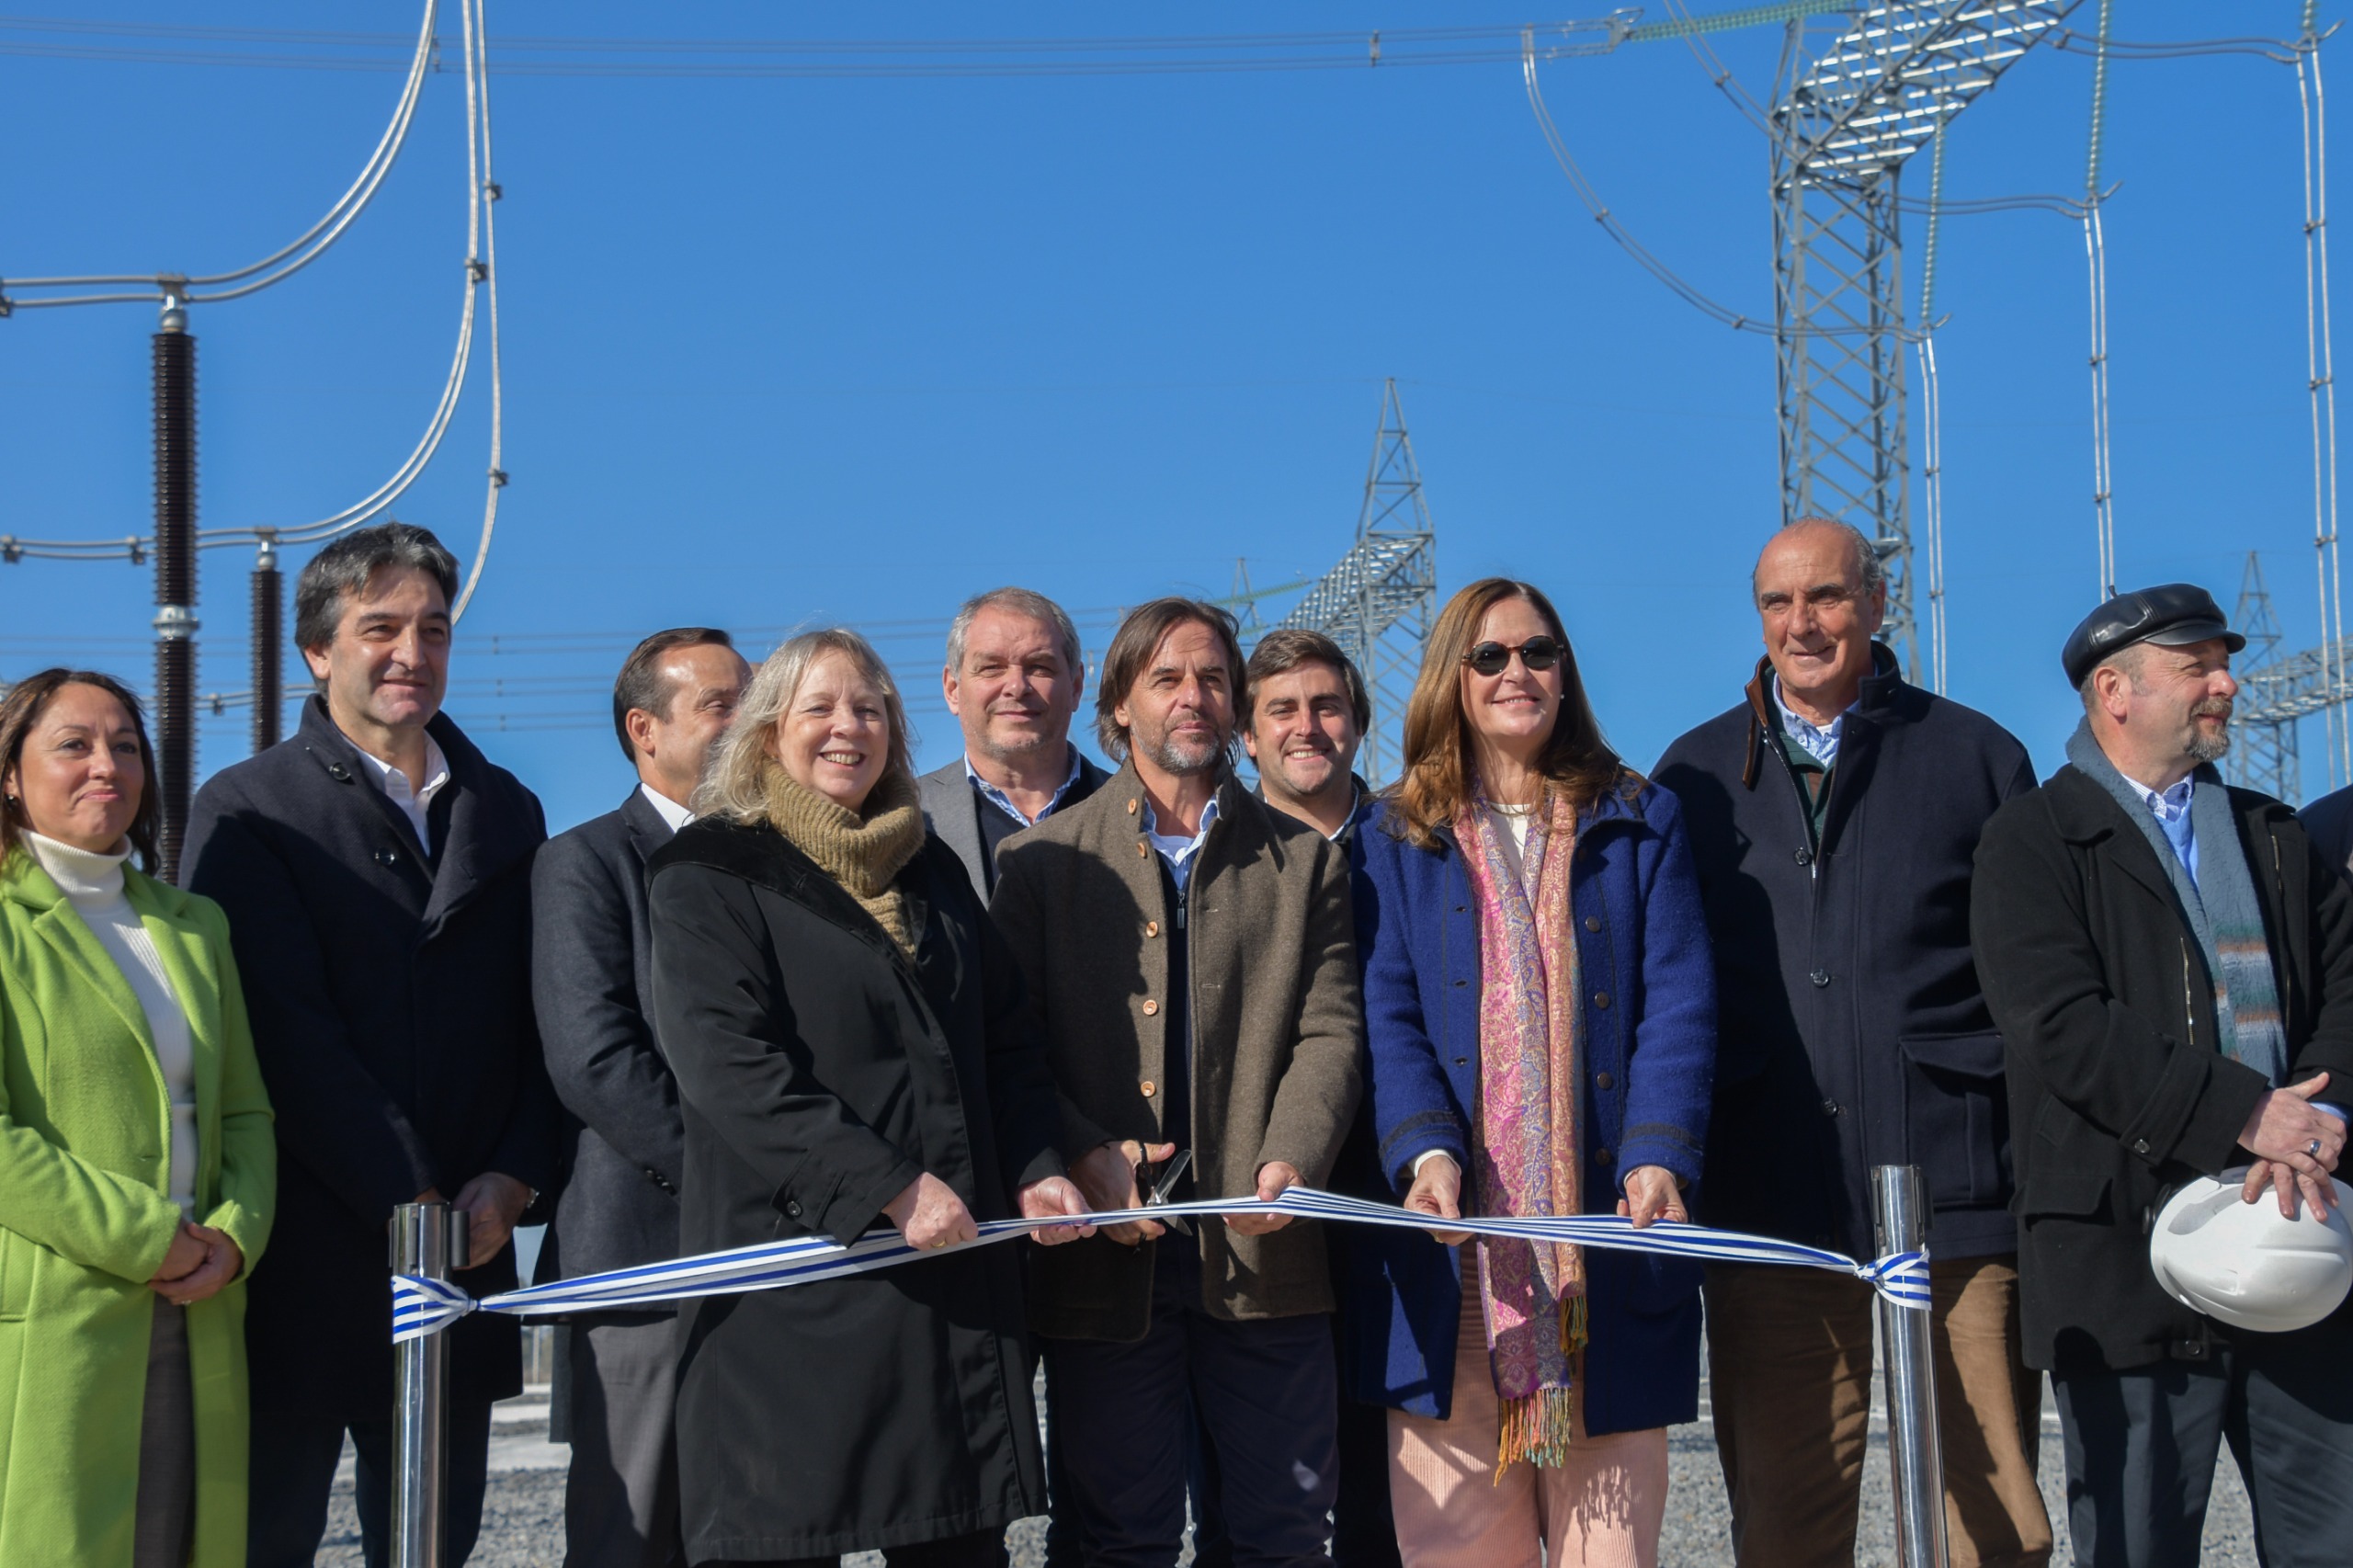 Inauguración de la Subestación de Trasmisión Cardal de 500 kV y Línea de Extra Alta Tensión Punta del Tigre-Cardal